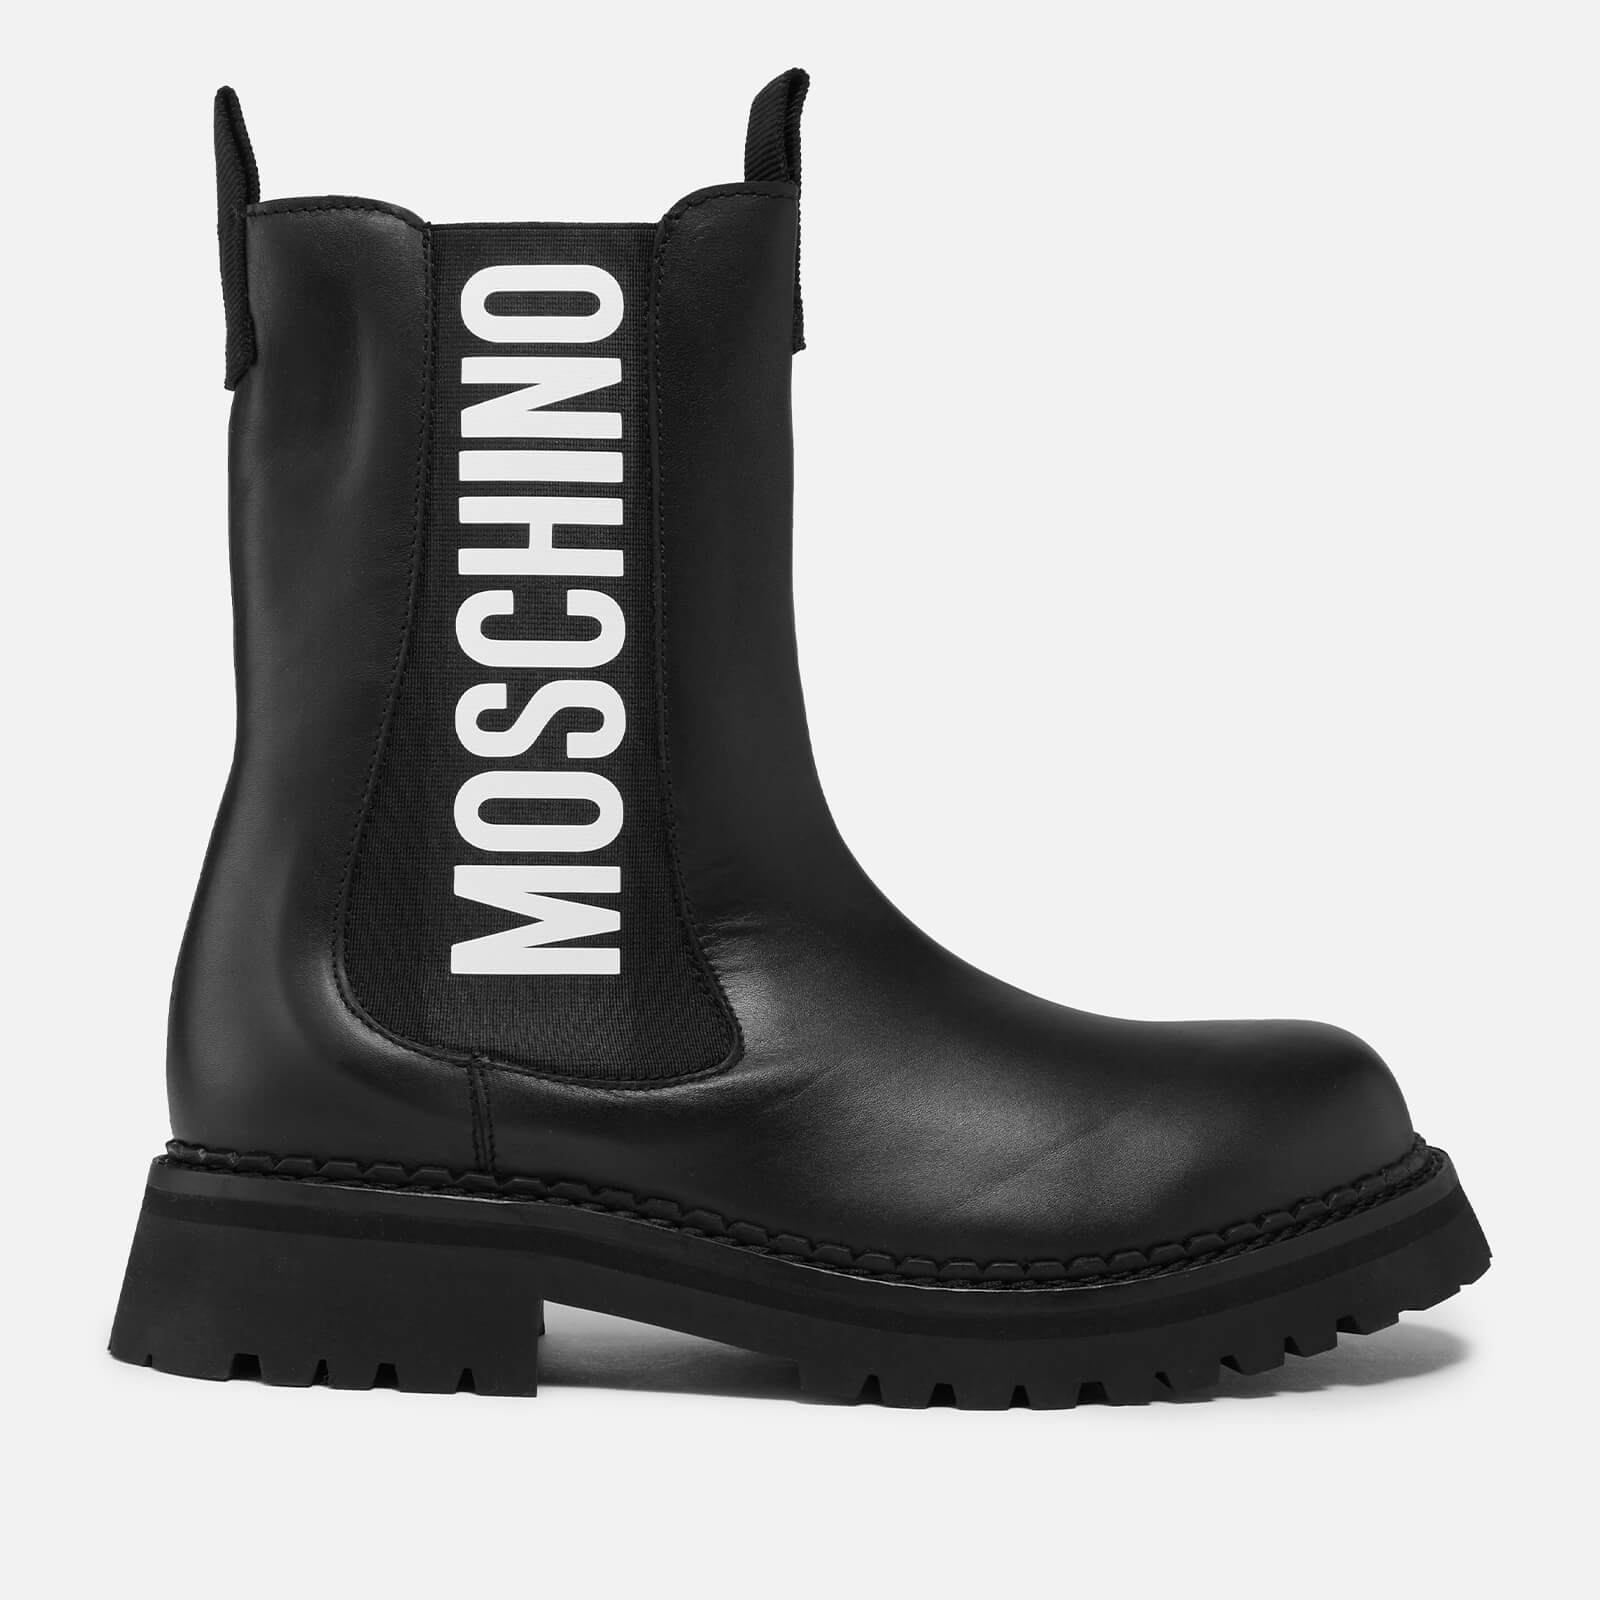 Moschino Women's Logo Rain Boots - Black - UK 3